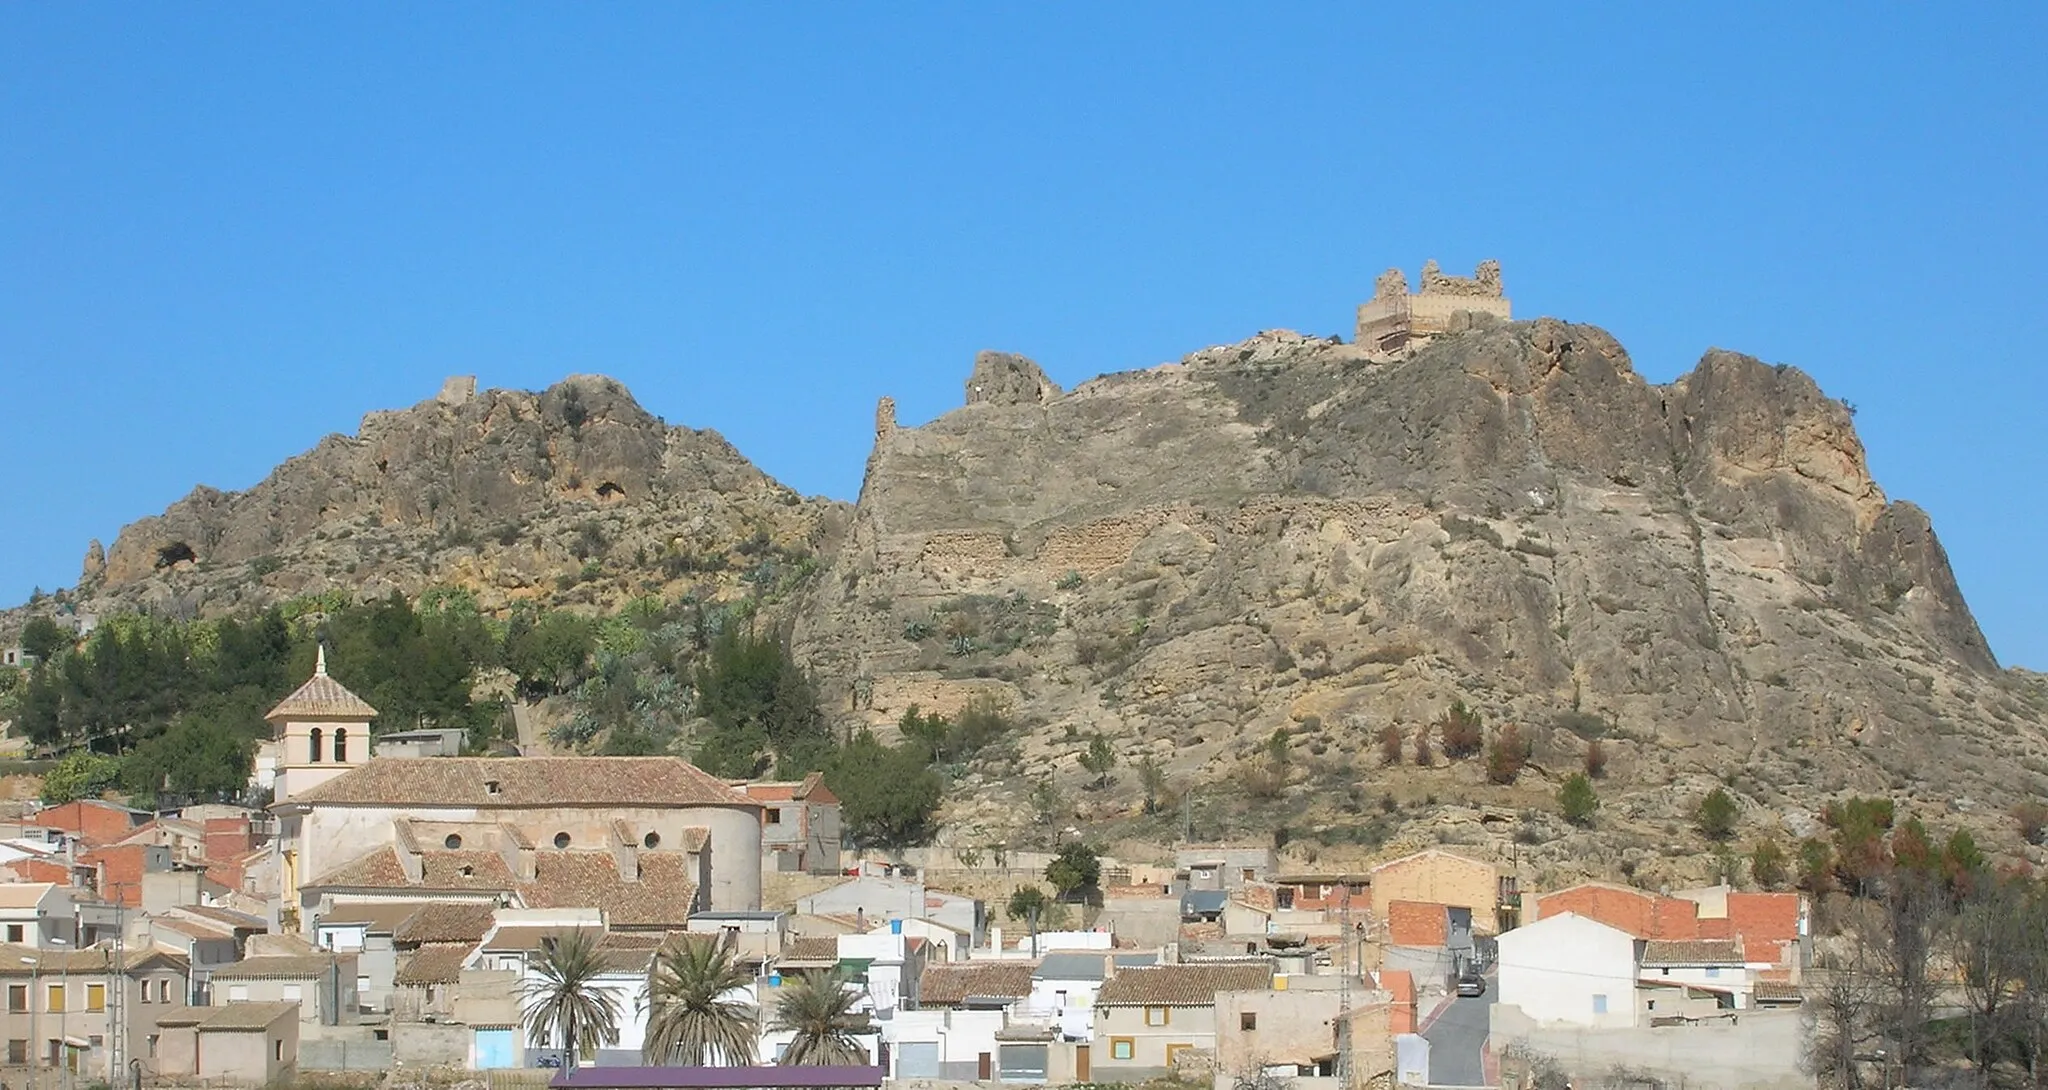 Photo showing: Vista parcial de la ciudad de Calasparra, Murcia, España, y vestigios del castillo árabe. Fotografía propia, cedida a PD.